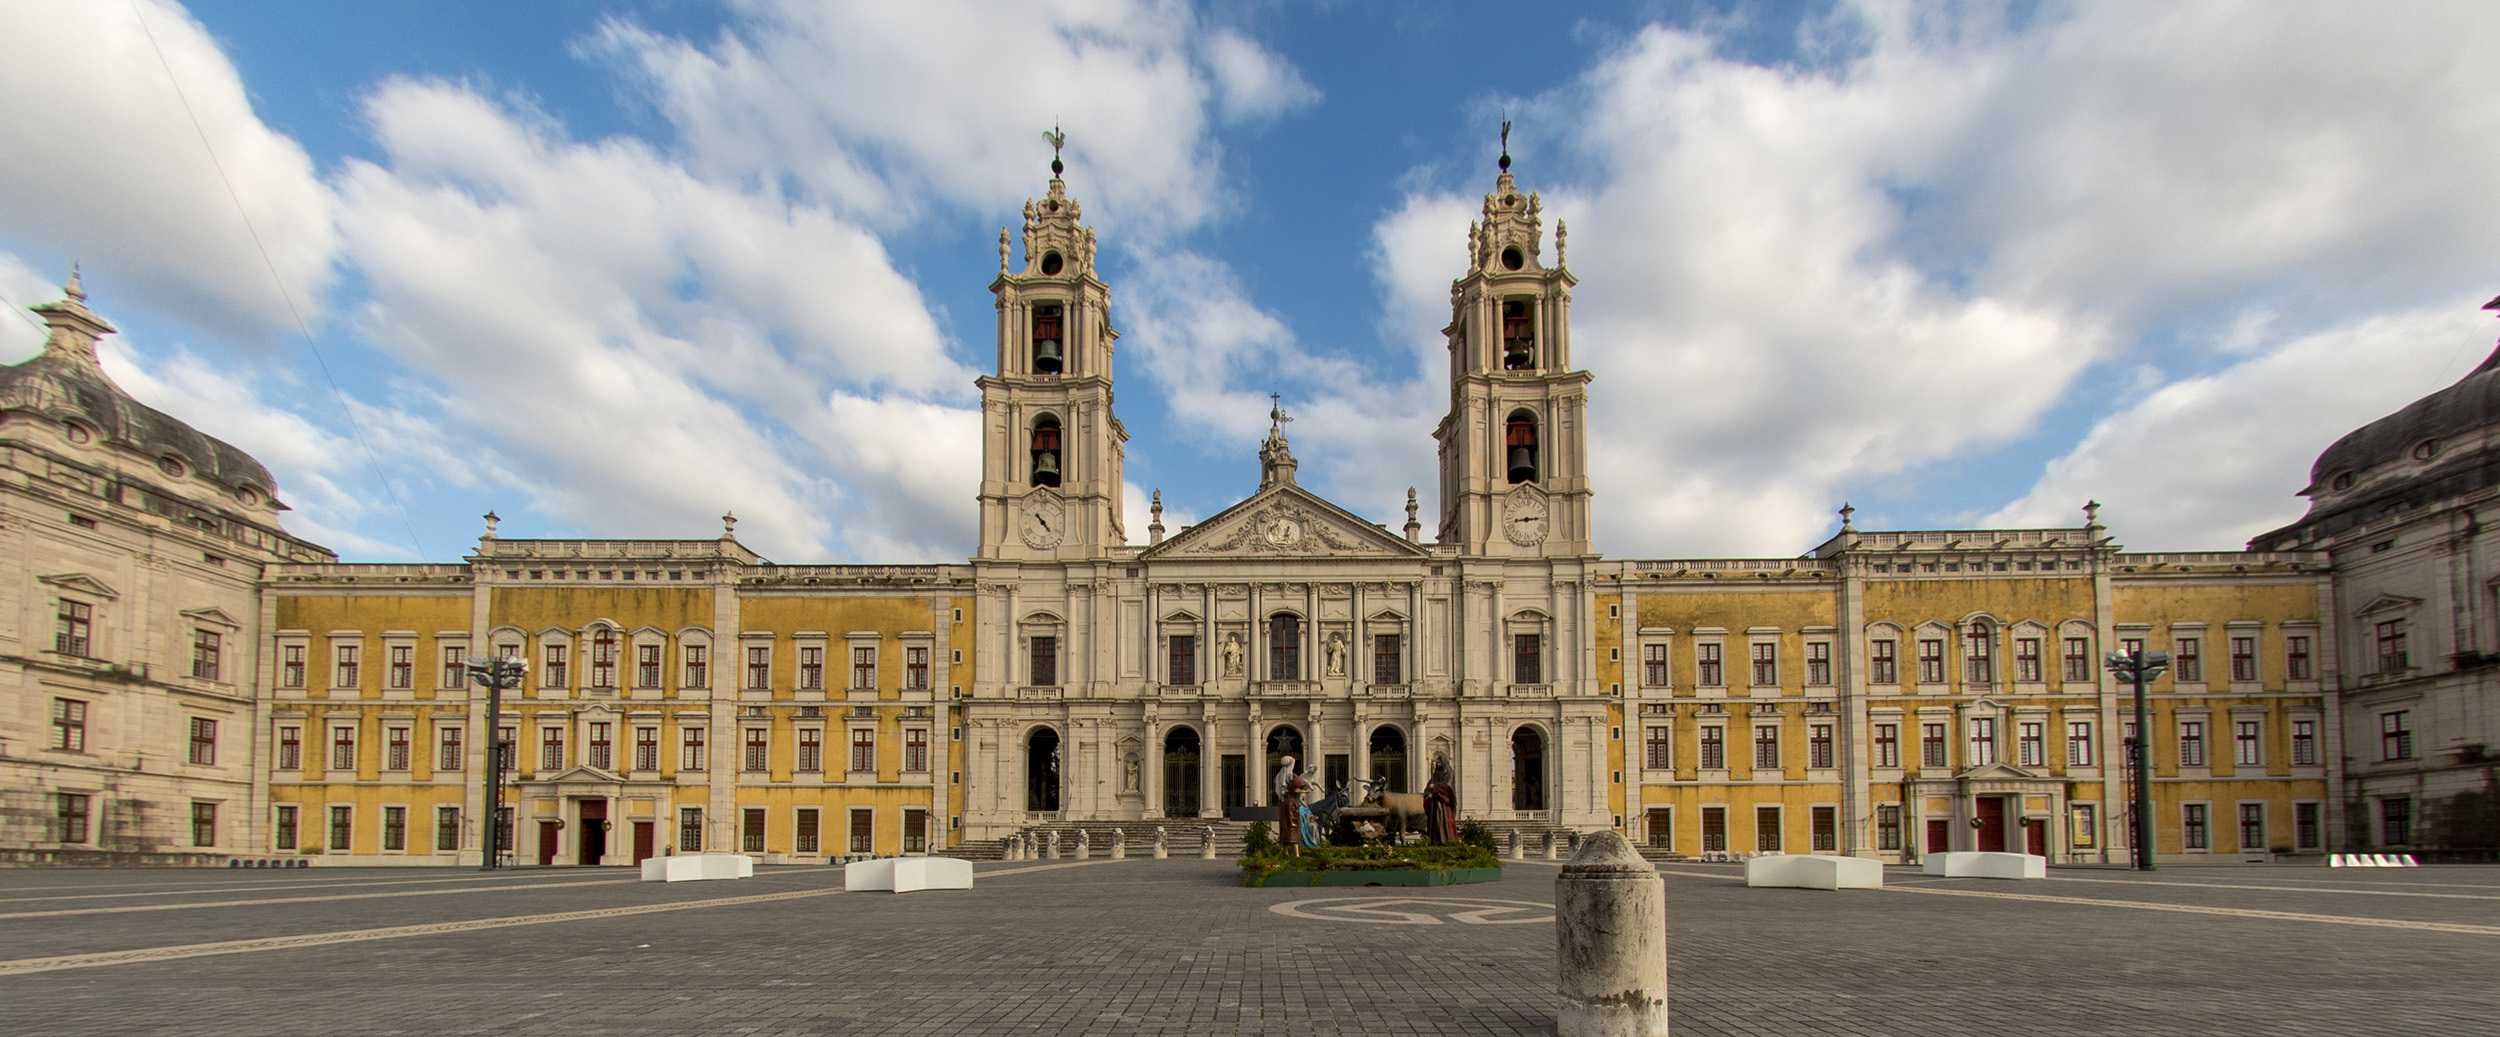 Rota Memorial do Convento: Era uma vez a gente que construiu esse convento  - Portugal - SAPO Viagens